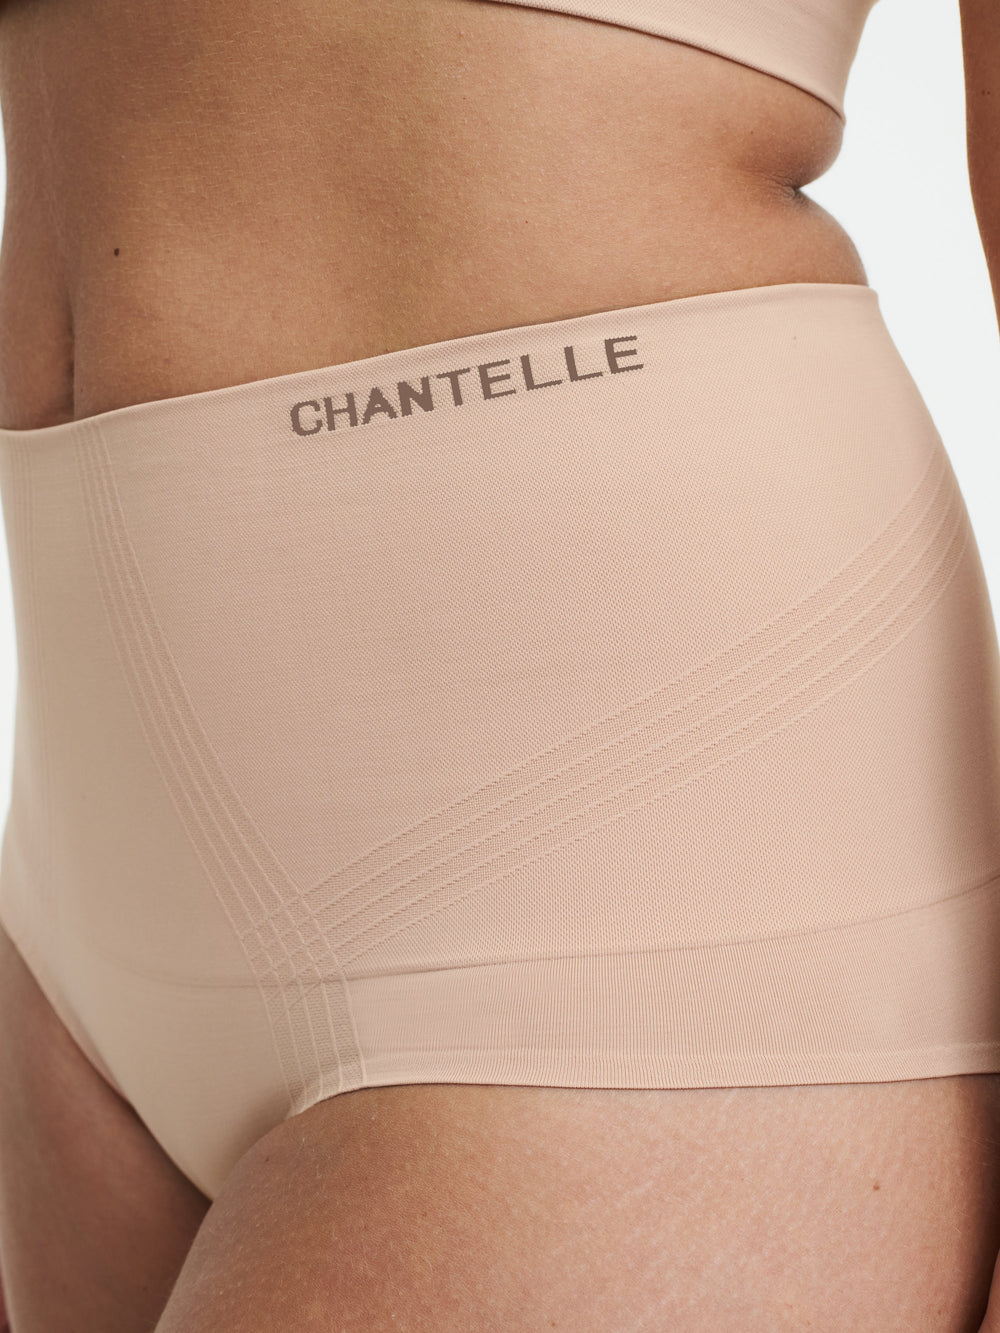 Chantelle Slip completo modellante a vita alta liscio e confortevole - Slip completo Sirocco Chantelle